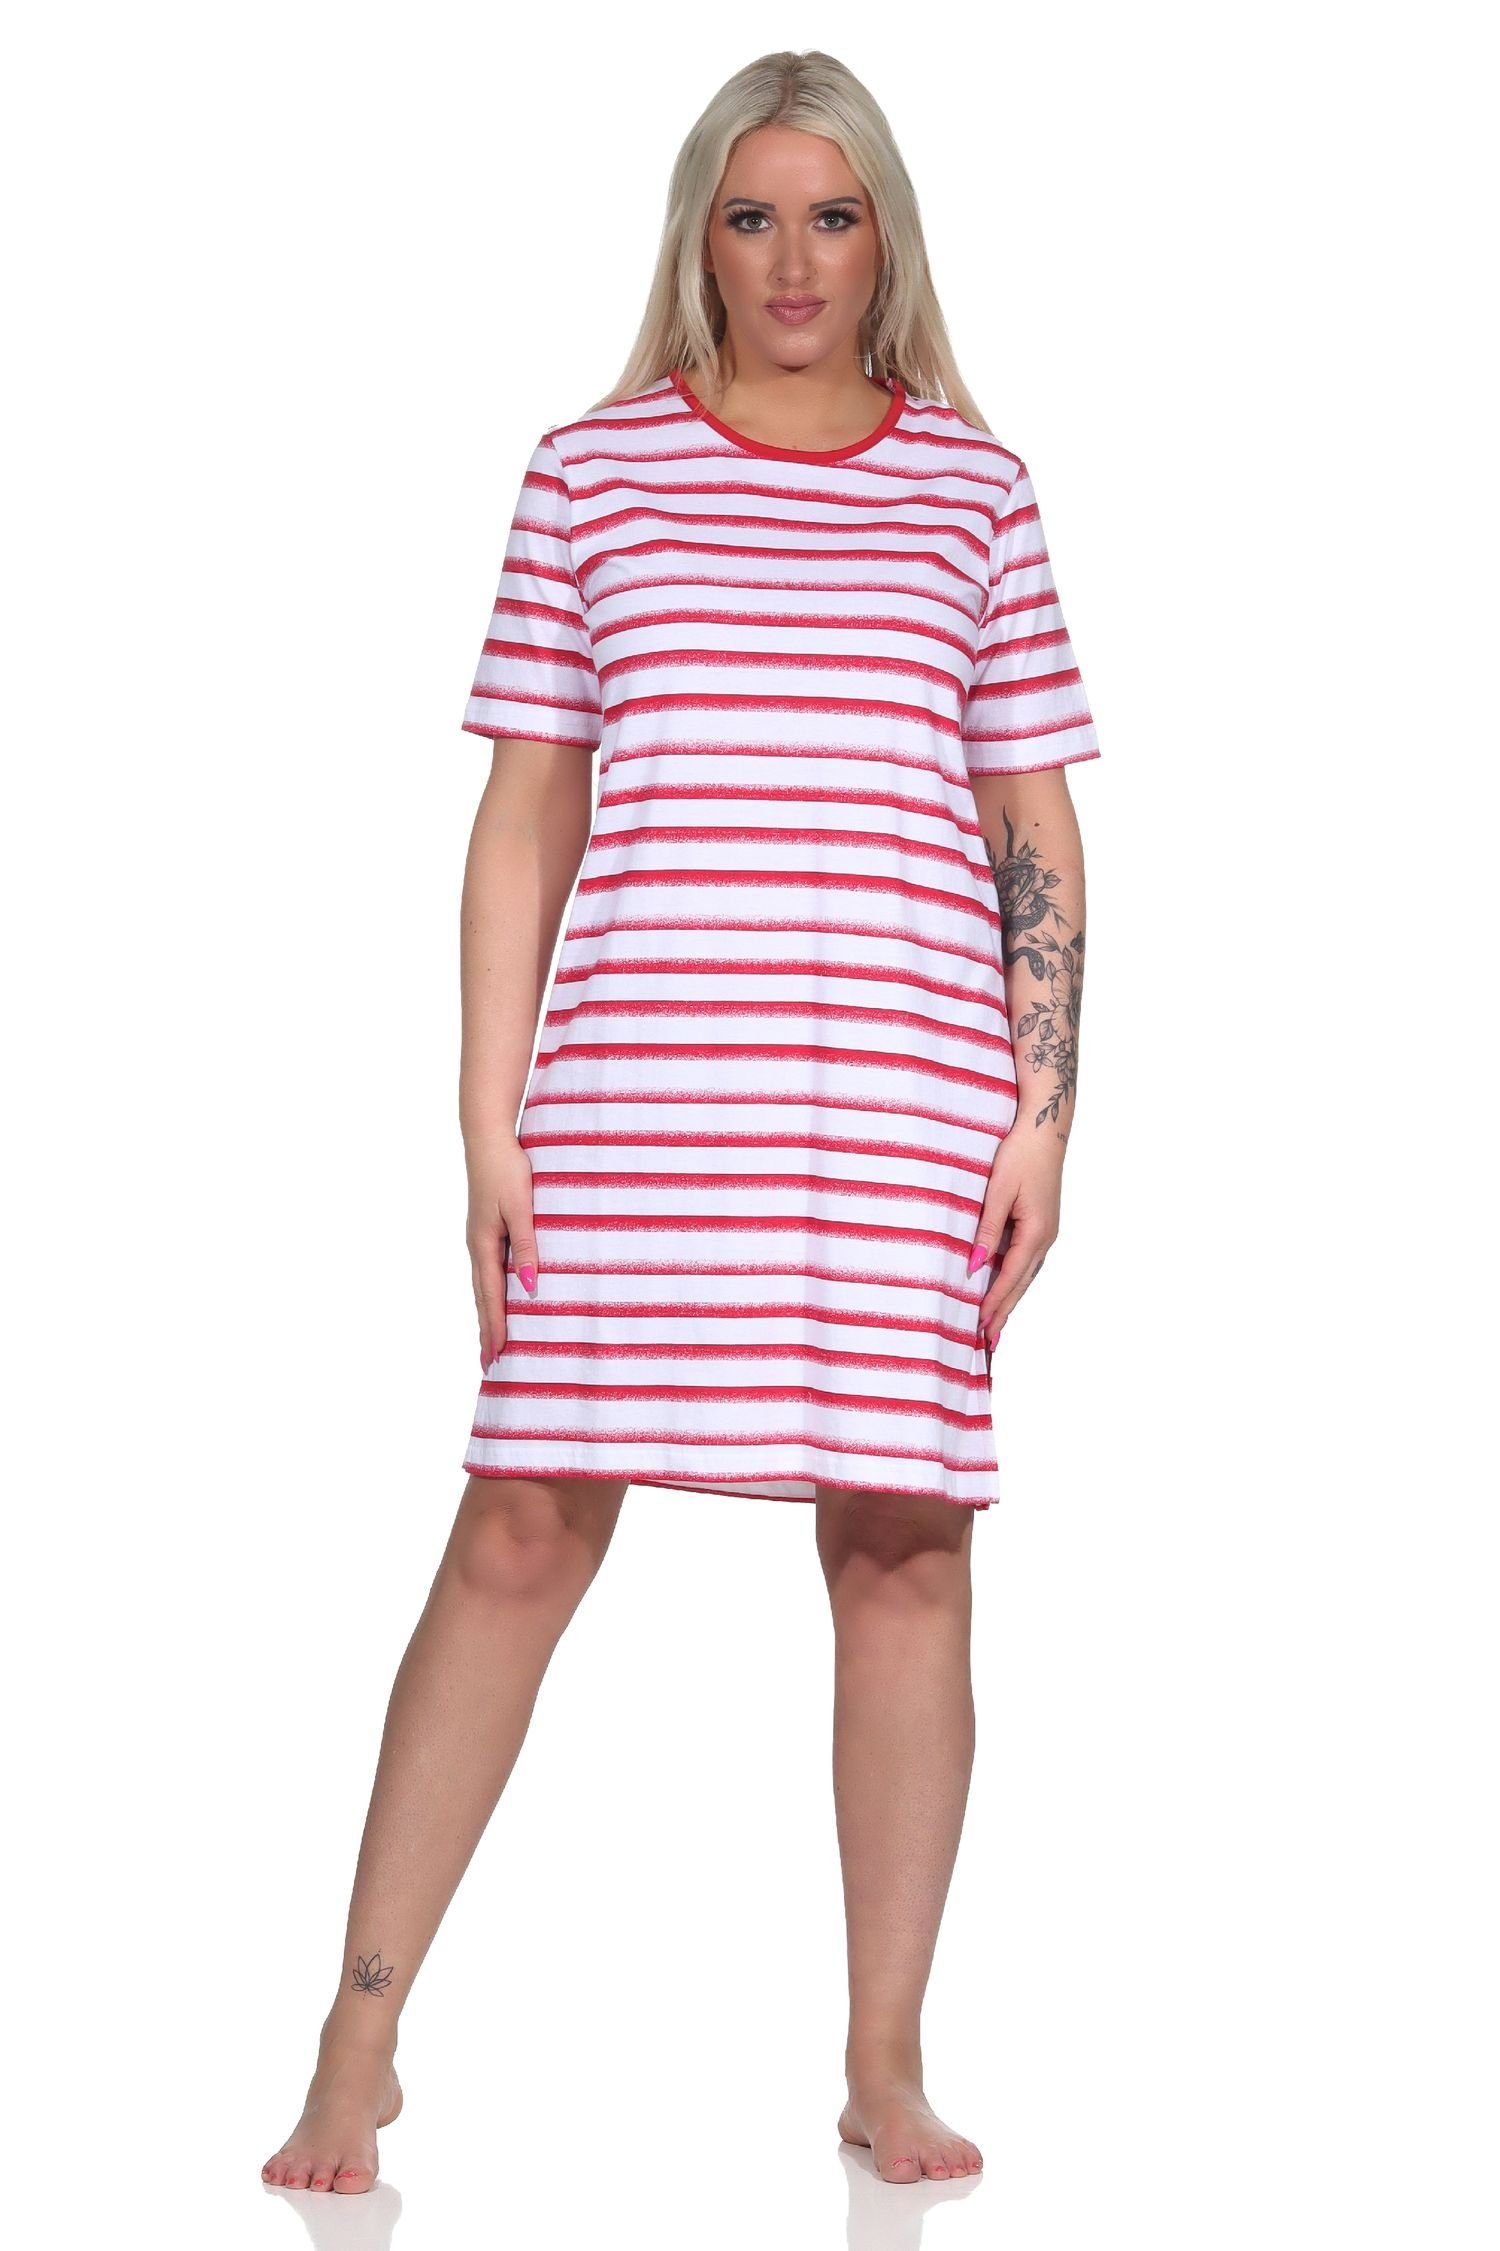 Normann Nachthemd Damen Nachthemd in Streifenoptik in kurzarm Übergröße rot maritimer -auch